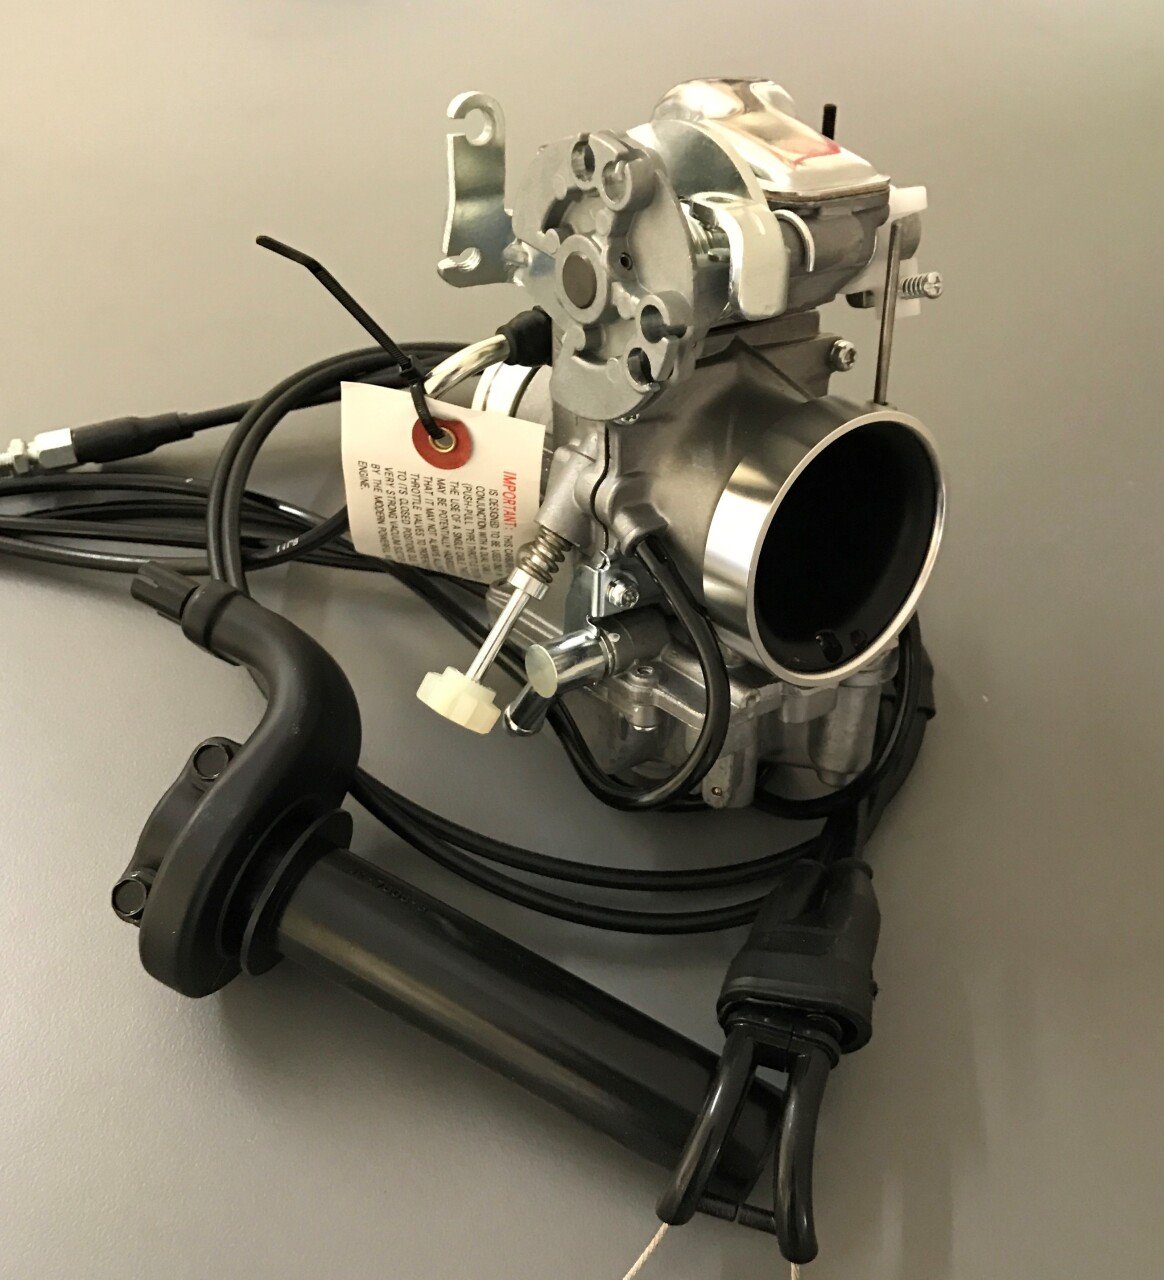 SAVE XR600 Mikuni TM40 Racing/Enduro Carburetor KIT incl. Throttle Assembly